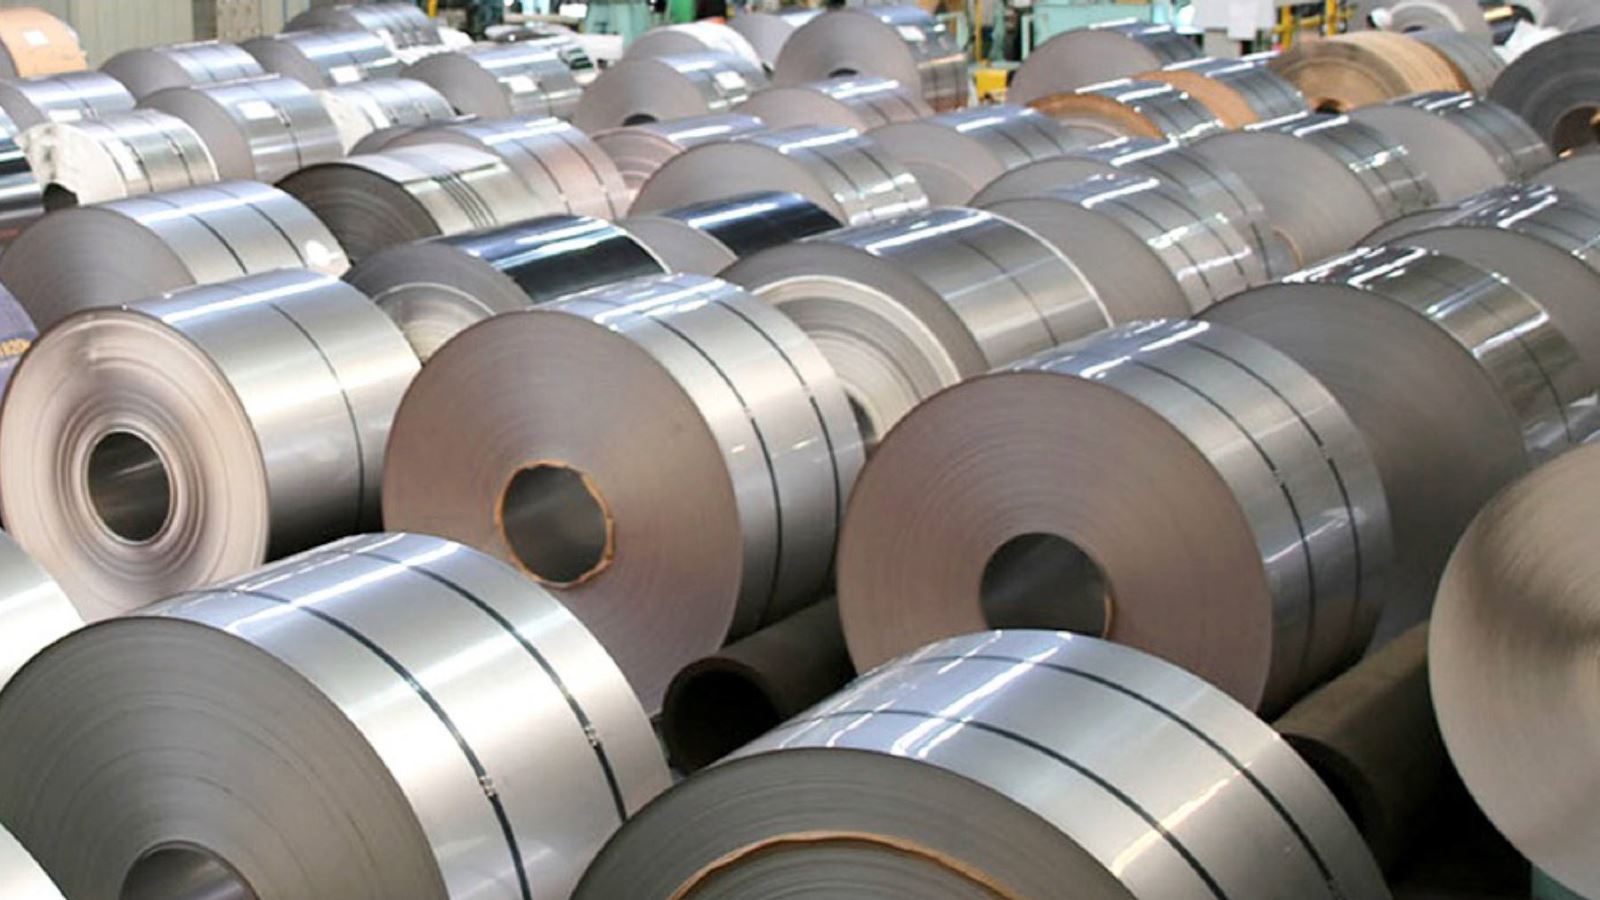  新日铁拟售18.5亿美元资产以收购印度第四大钢铁公司